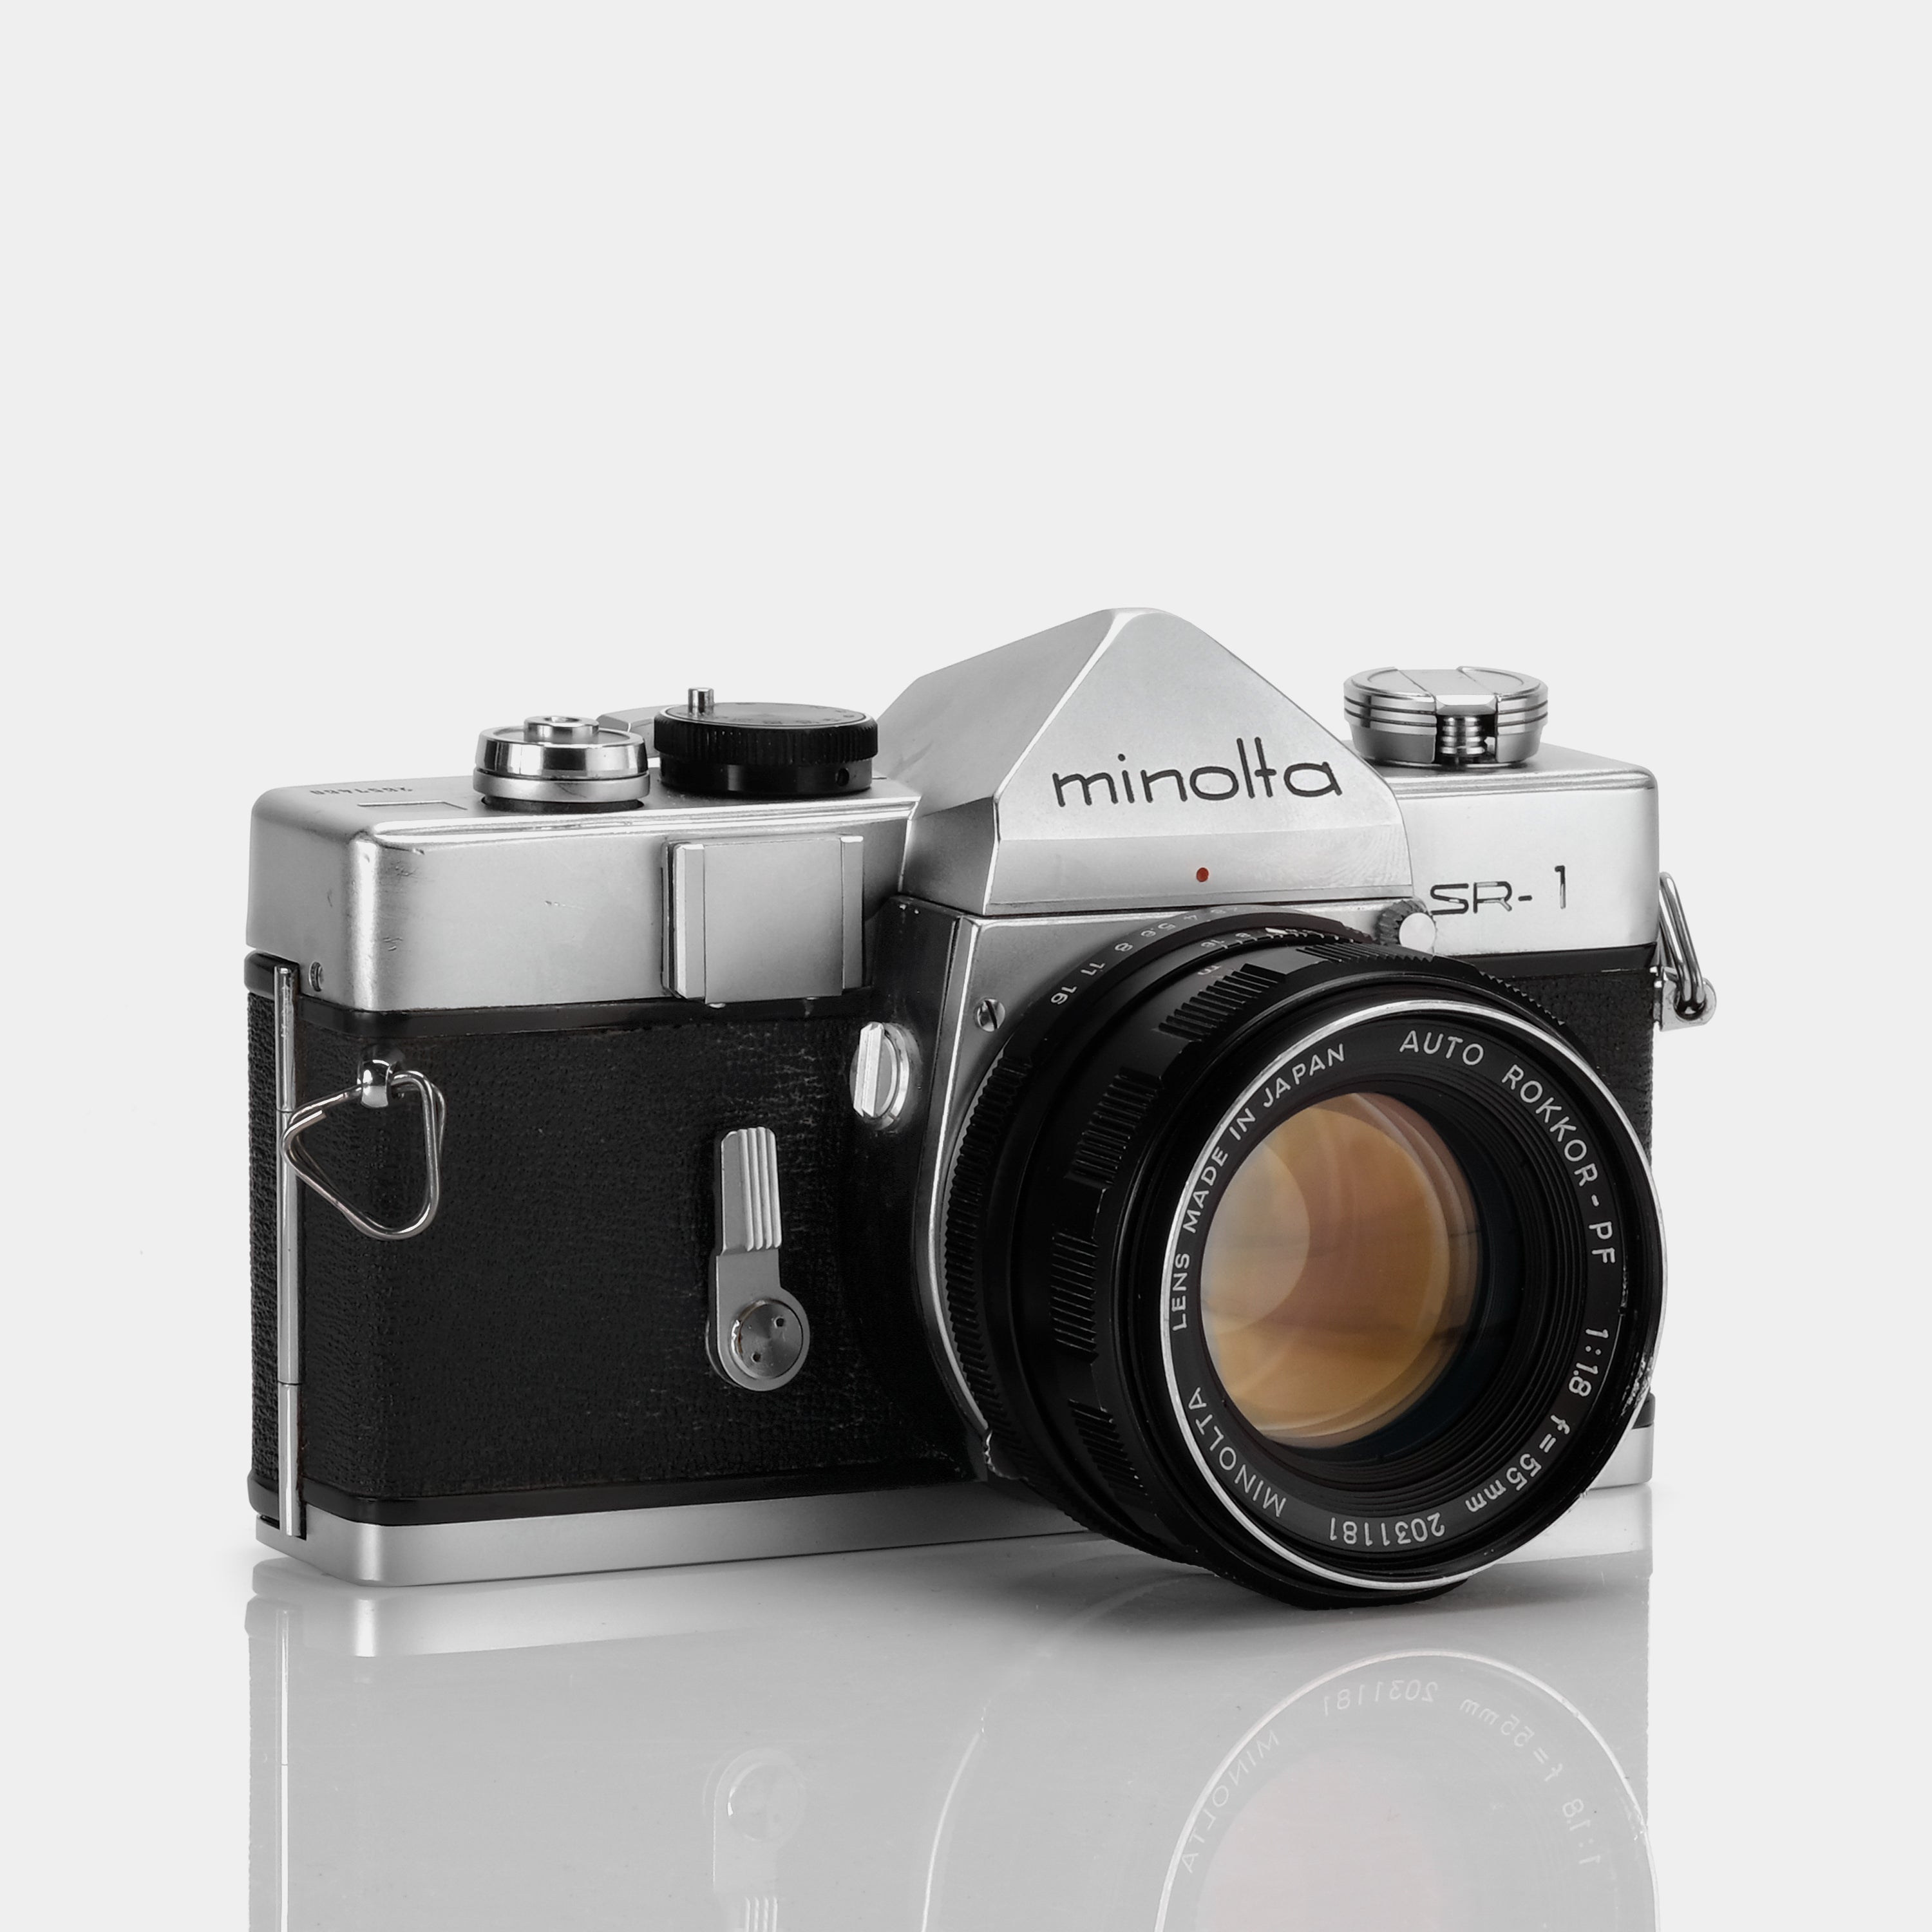 Minolta SR-1 SLR 35mm Film Camera with 55mm 1:1.8 Auto Rokkor-PF Lens